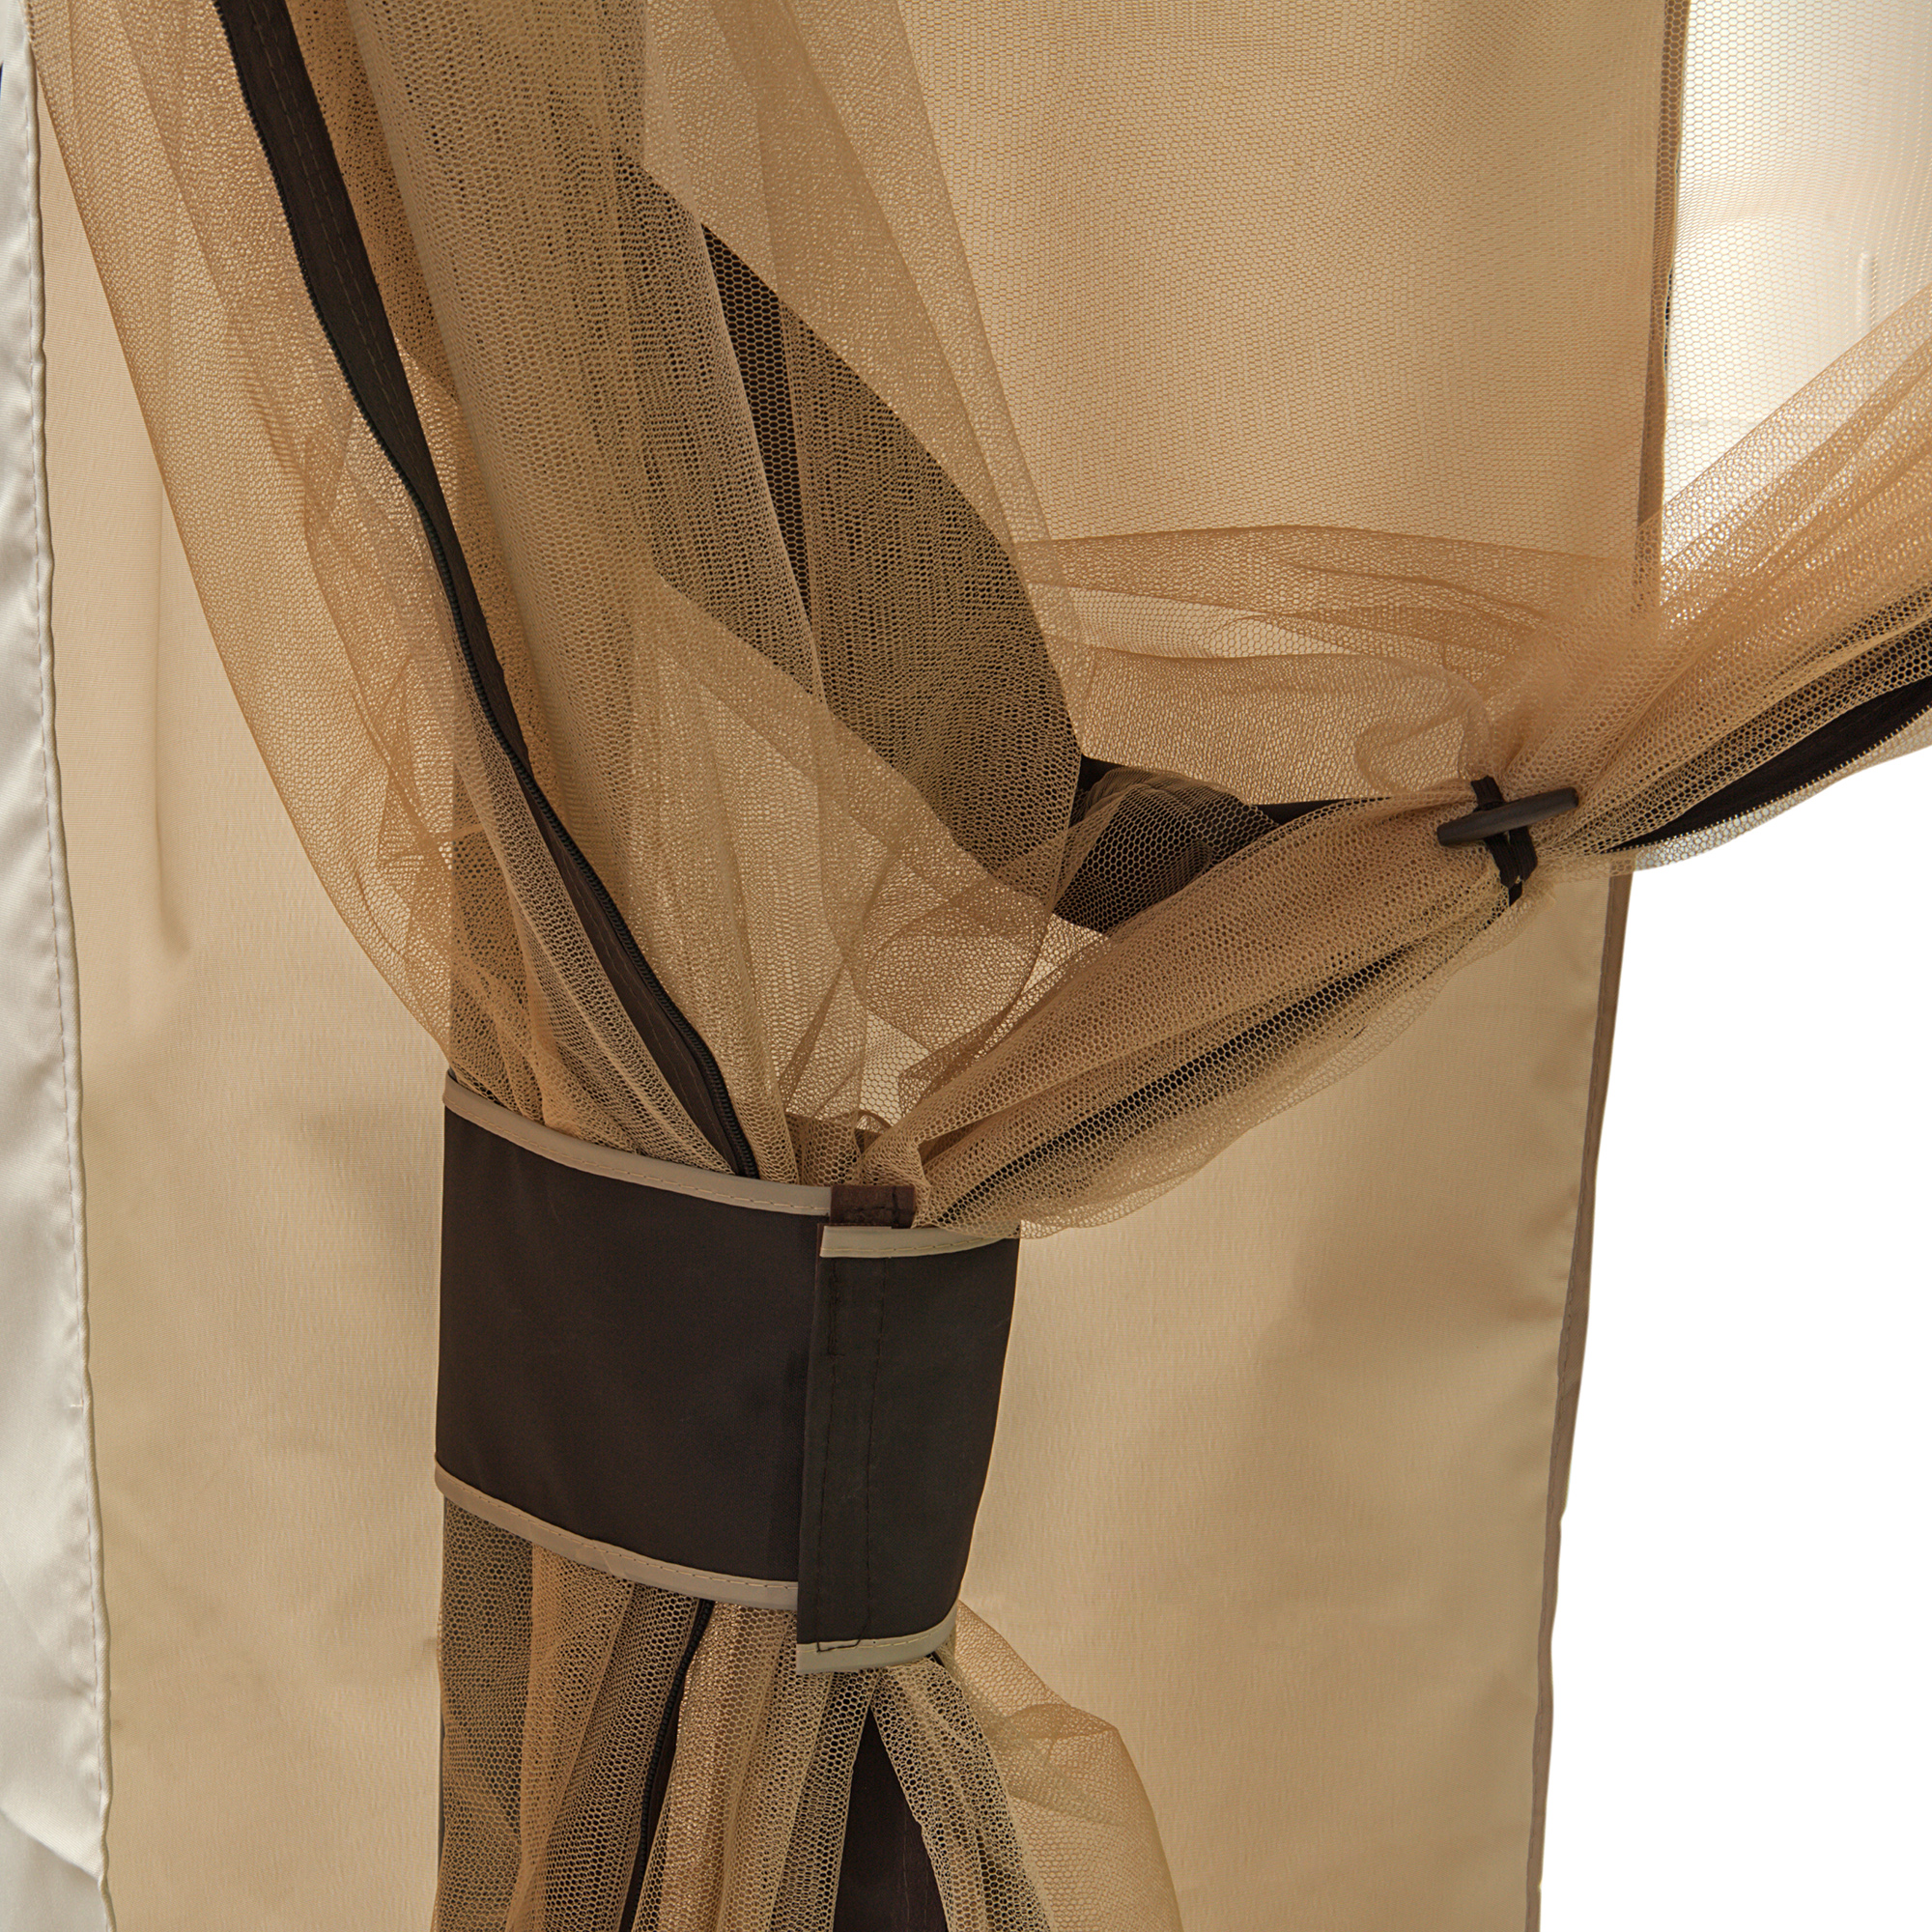 Шатер Ganghao с москитной сеткой 300x365x295см (GH13N01), цвет коричневый - фото 2